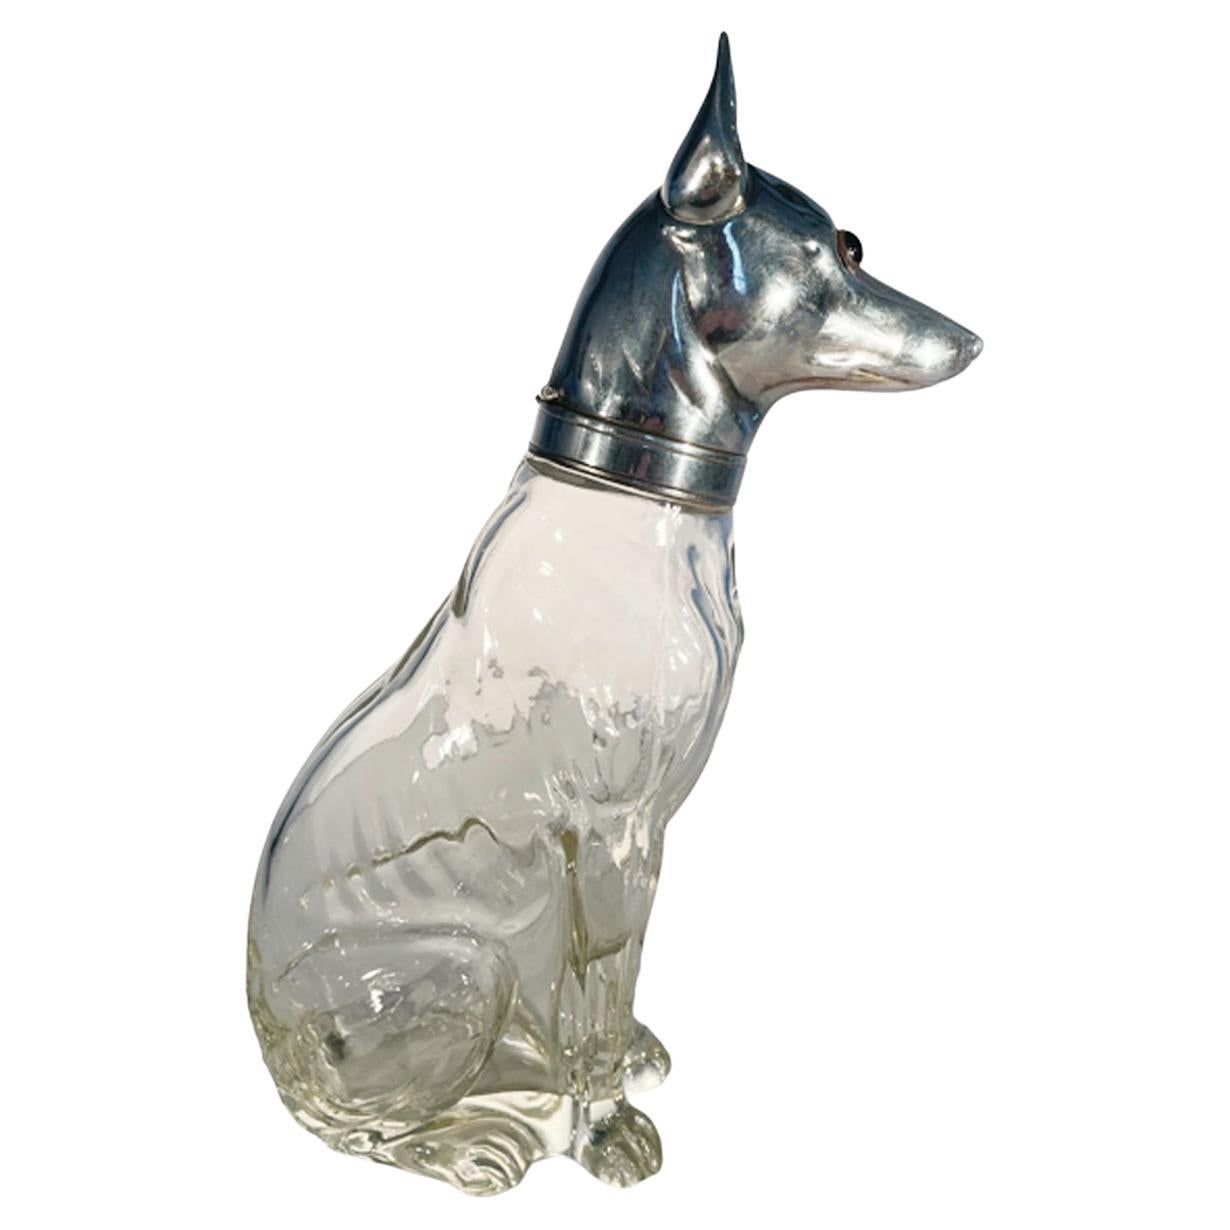 Art-Deco-Karaffe in Form eines Greyhounds oder Whippets. Der gut definierte Körper des Hundes aus klarem Glas in sitzender Position wird von einem aufklappbaren Kopf aus Silberblech gekrönt, der mit Glasaugen nach vorne blickt. Der Hals mit Kragen